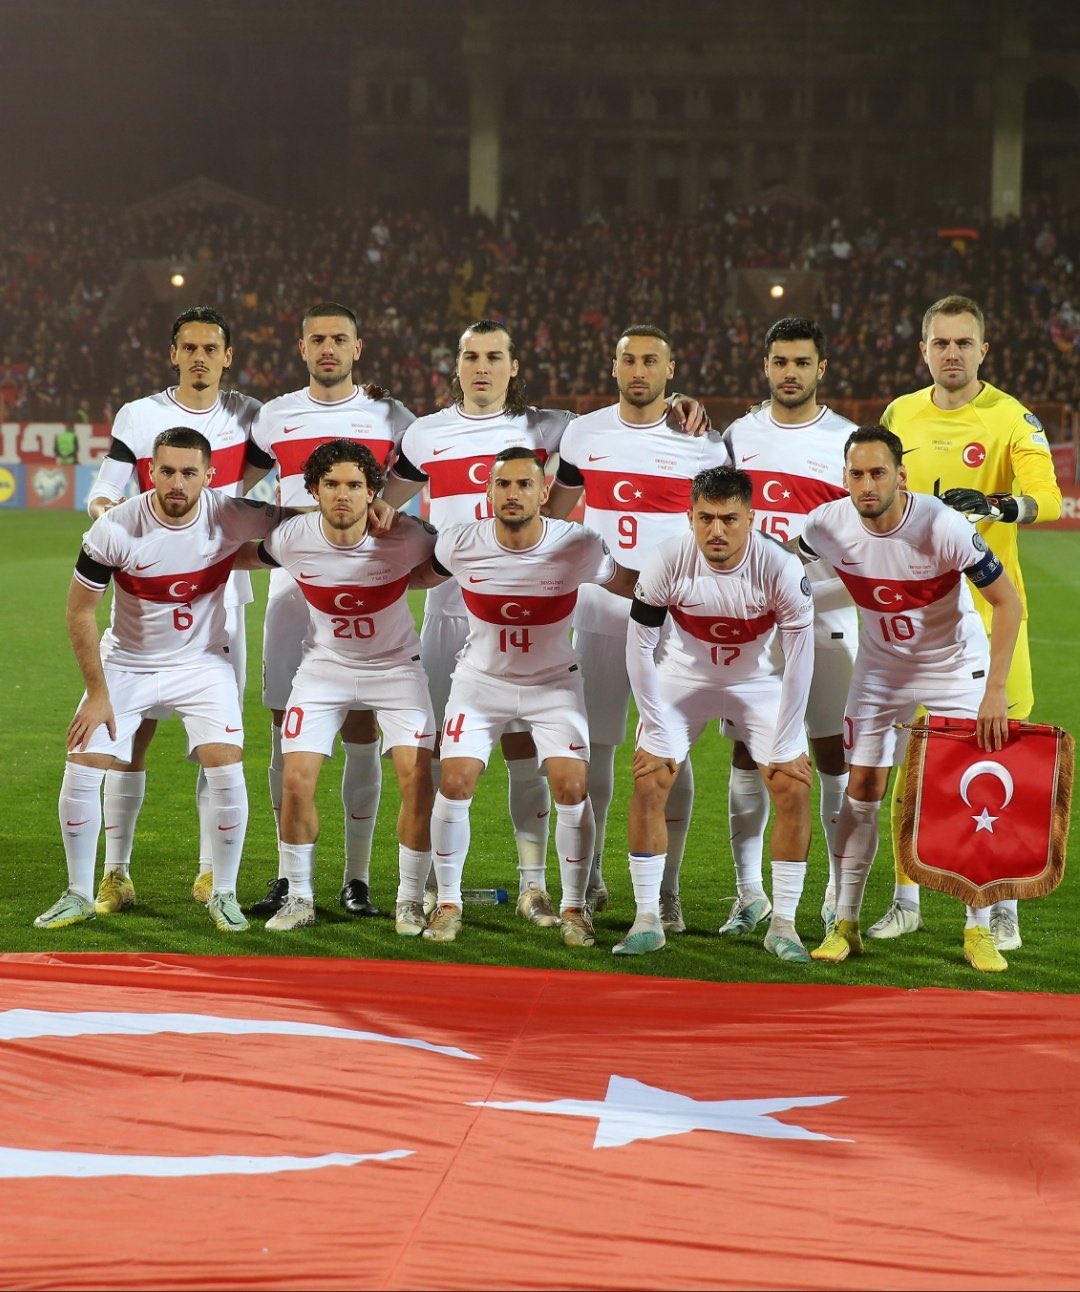 A Milli Takımımız, 1-0 geriye düştüğü maçta,Ermenistan’ı deplasmanda 2-1 mağlup etti